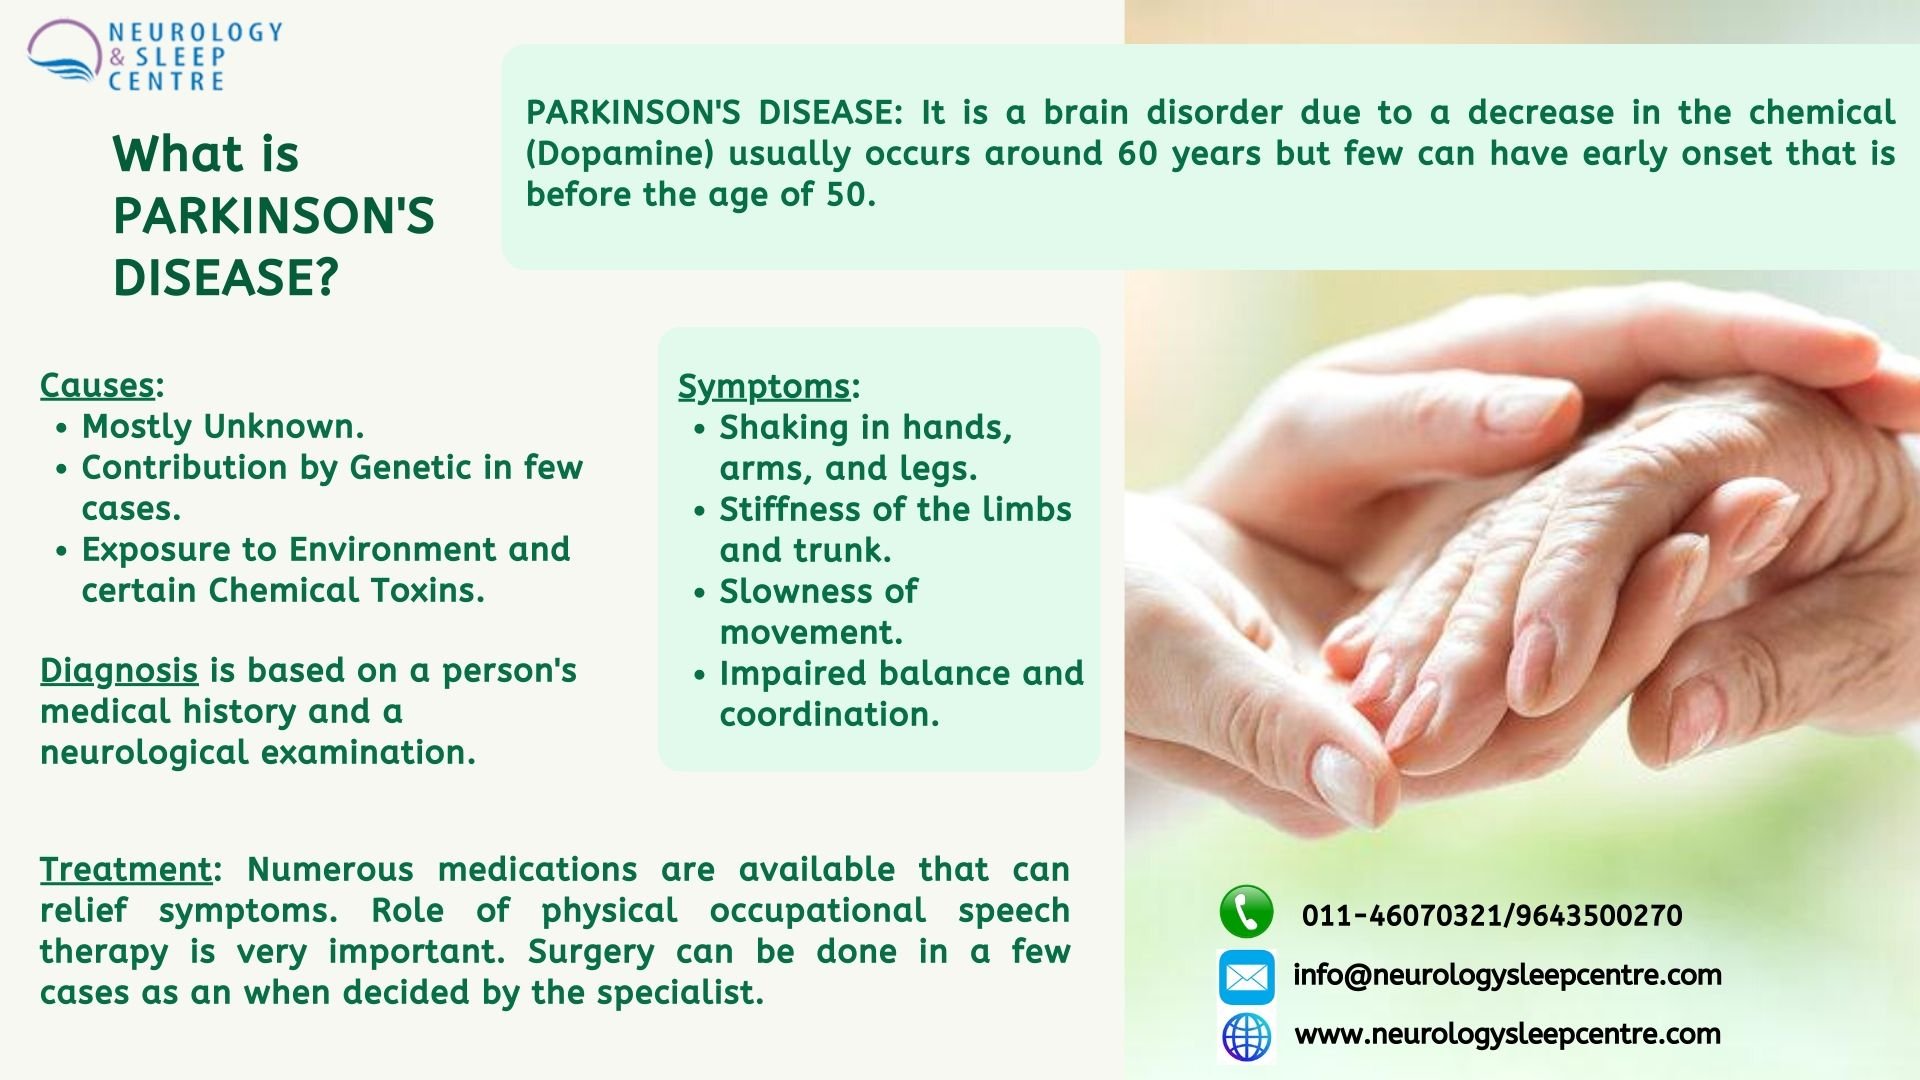 Series on Parkinsons Disease